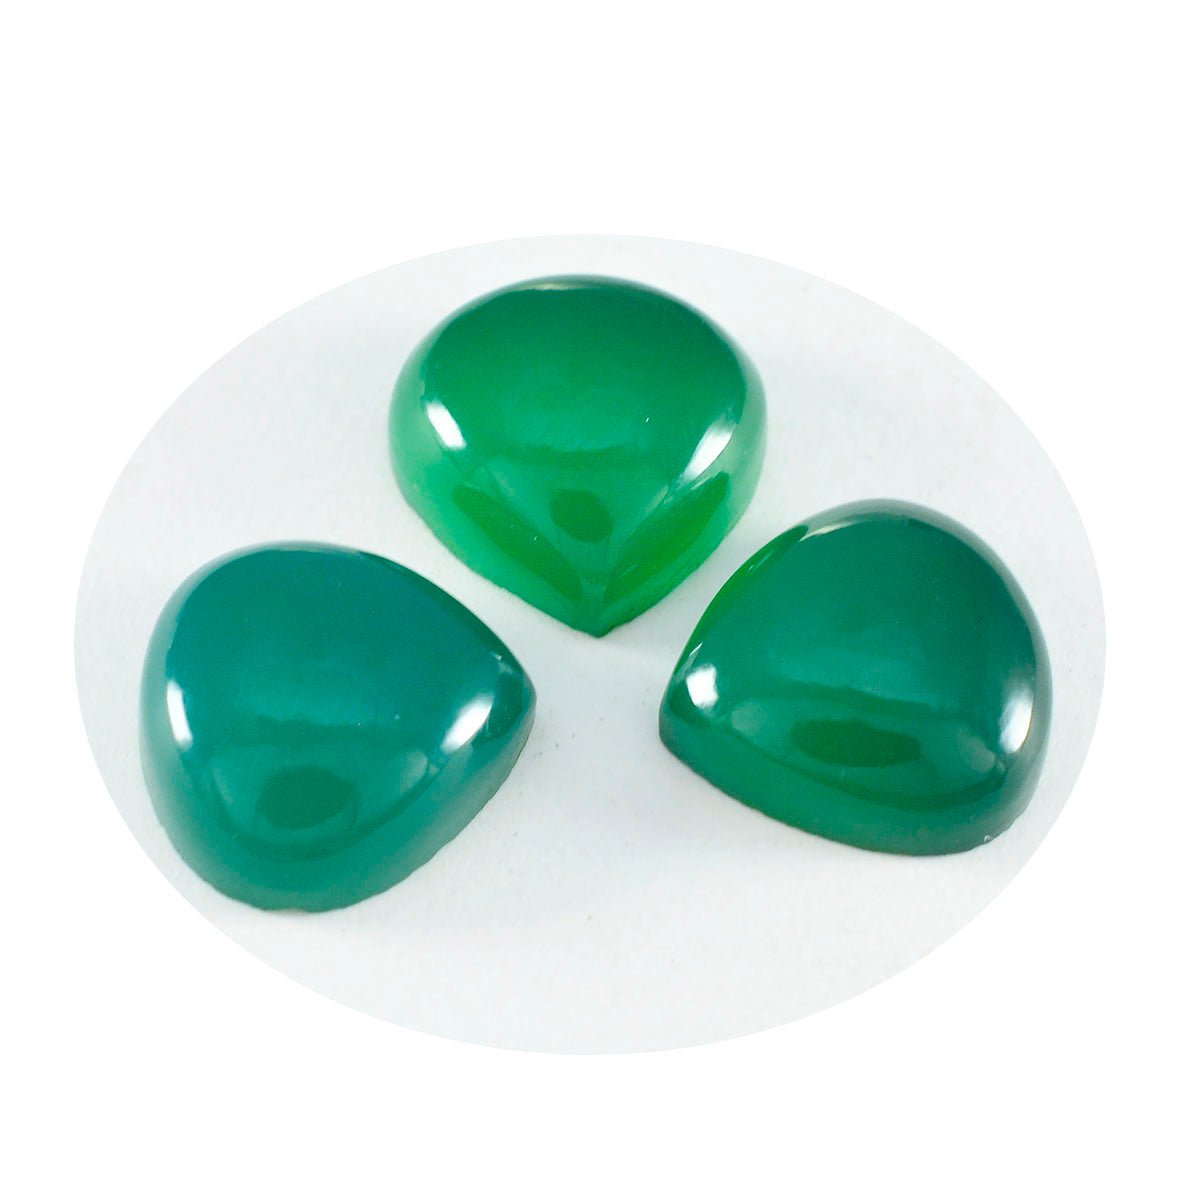 riyogems 1шт зеленый оникс кабошон 13х13 мм в форме сердца превосходное качество россыпь драгоценных камней